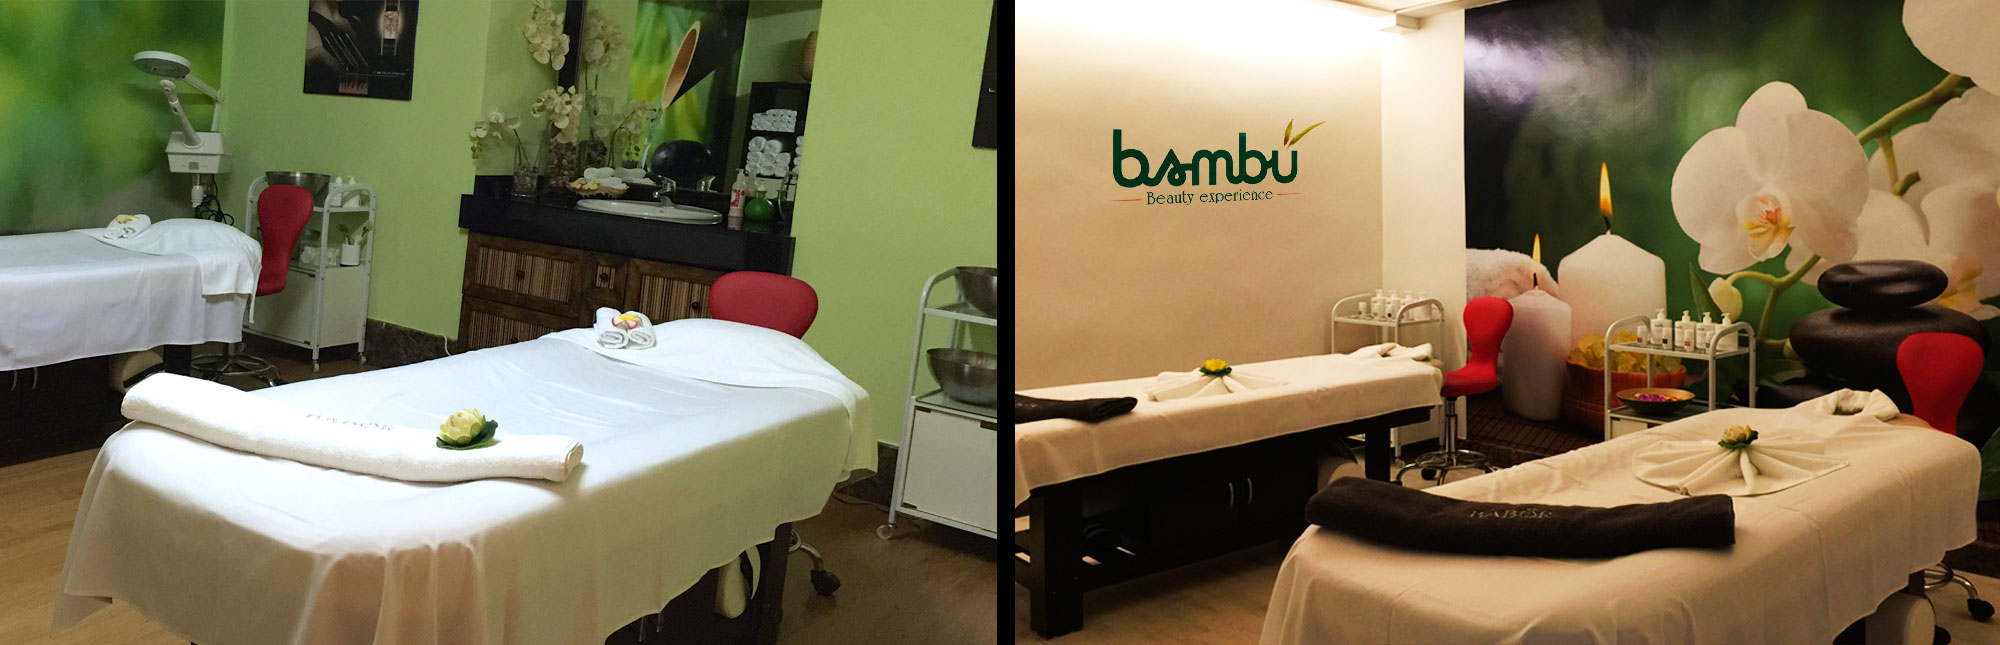 Salon de belleza Bambú